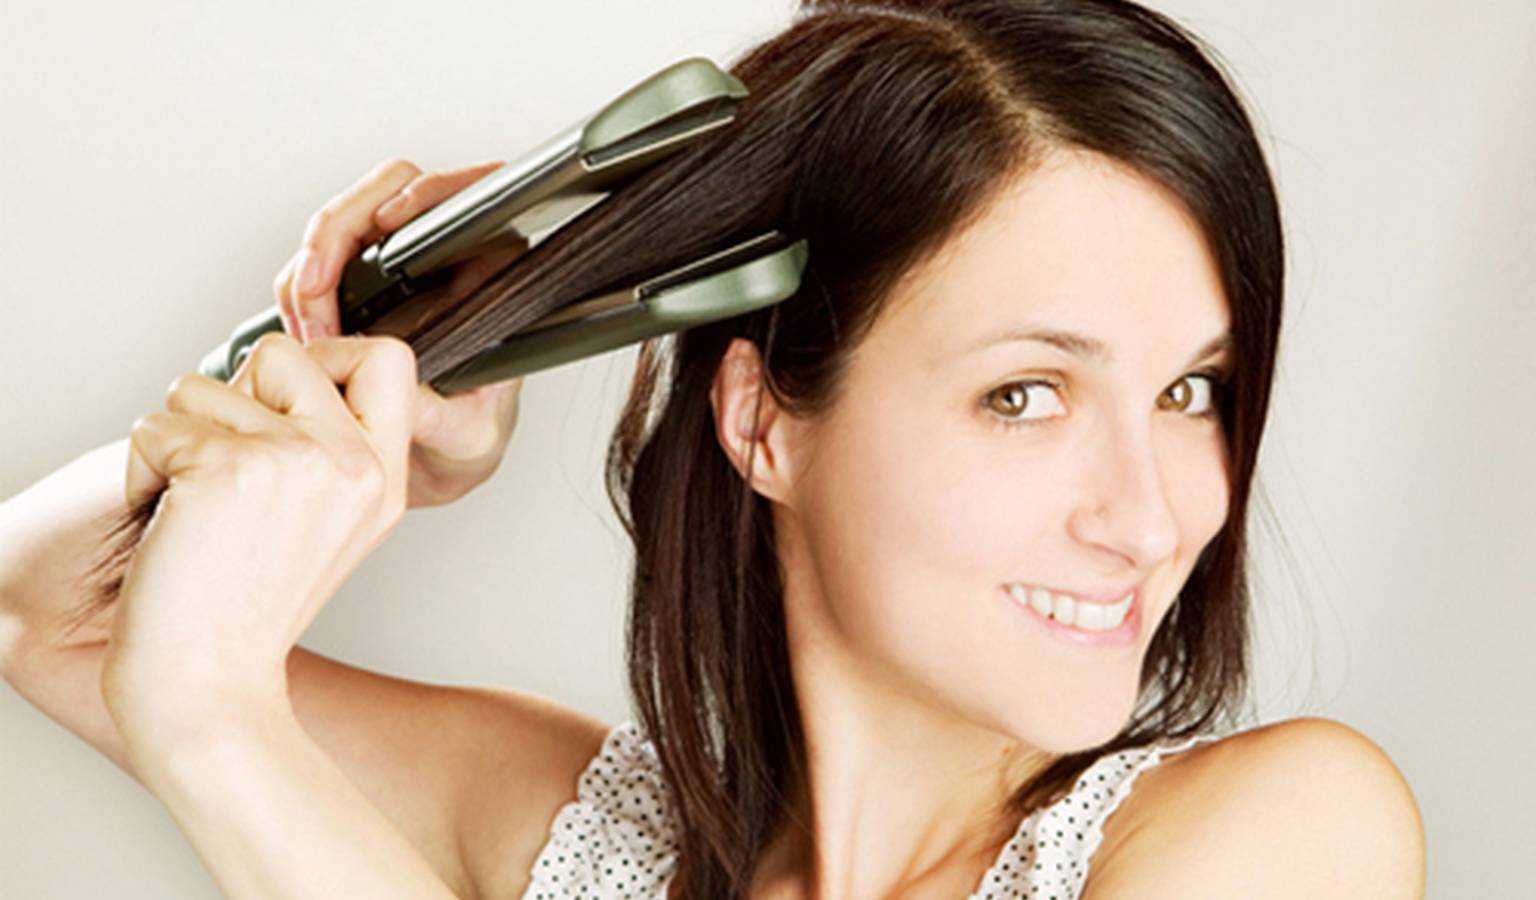 Chỉ một chiếc máy kẹp tóc nhưng đã làm nên chuyện với mái tóc xoăn của bạn đấy!